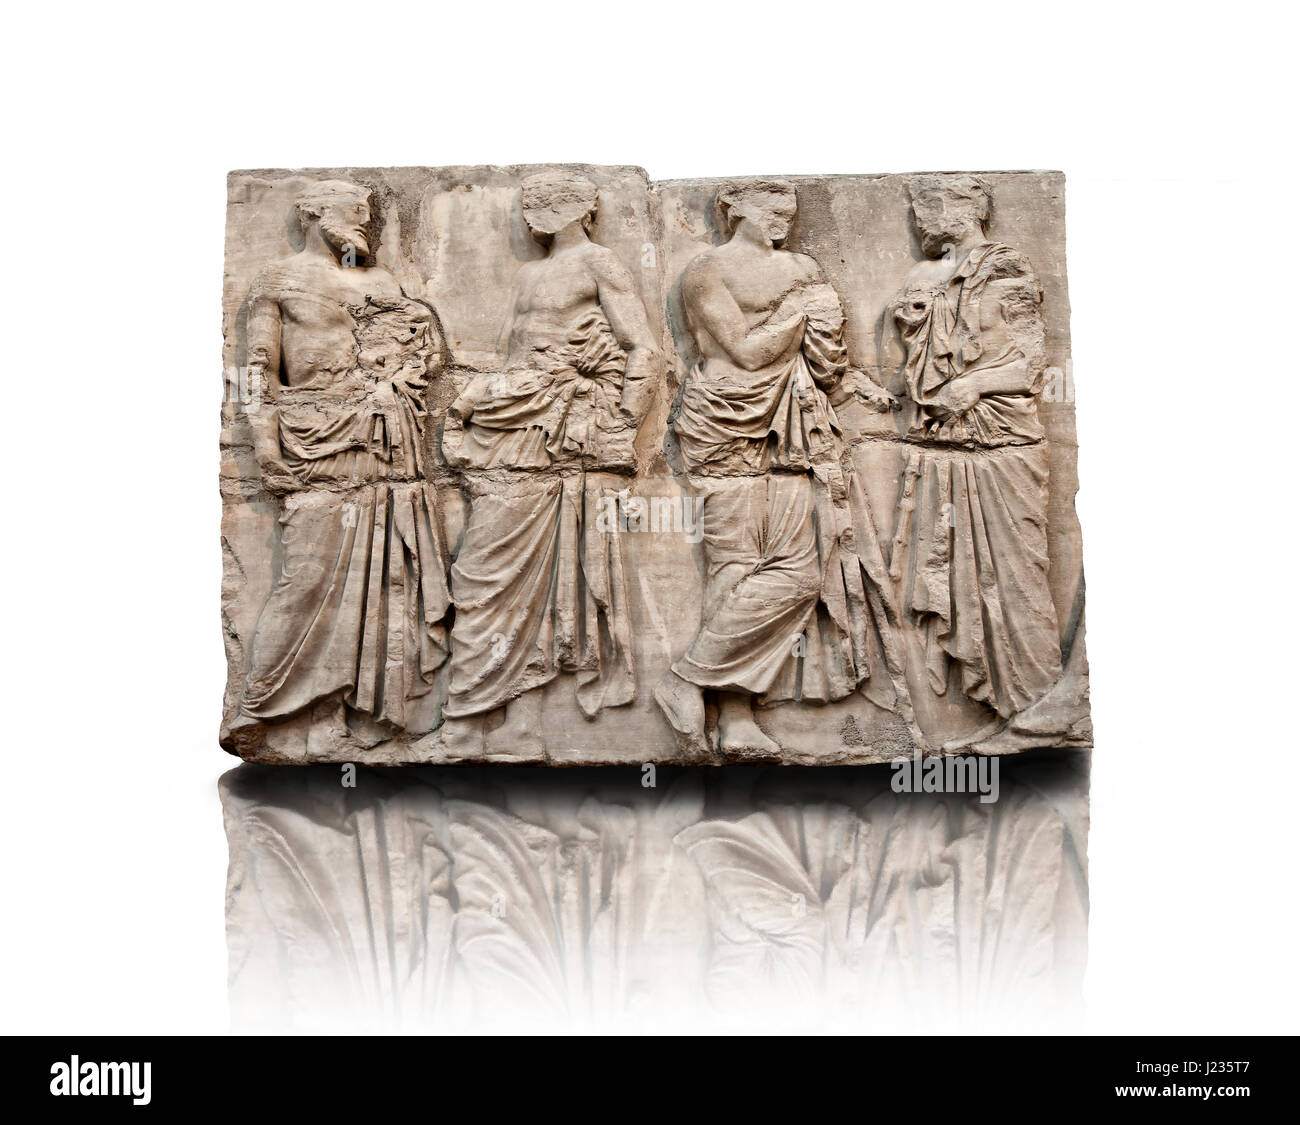 En Releif sculptures du Parthénon de l'acropole d'Athènes. British Museum, Londres Banque D'Images